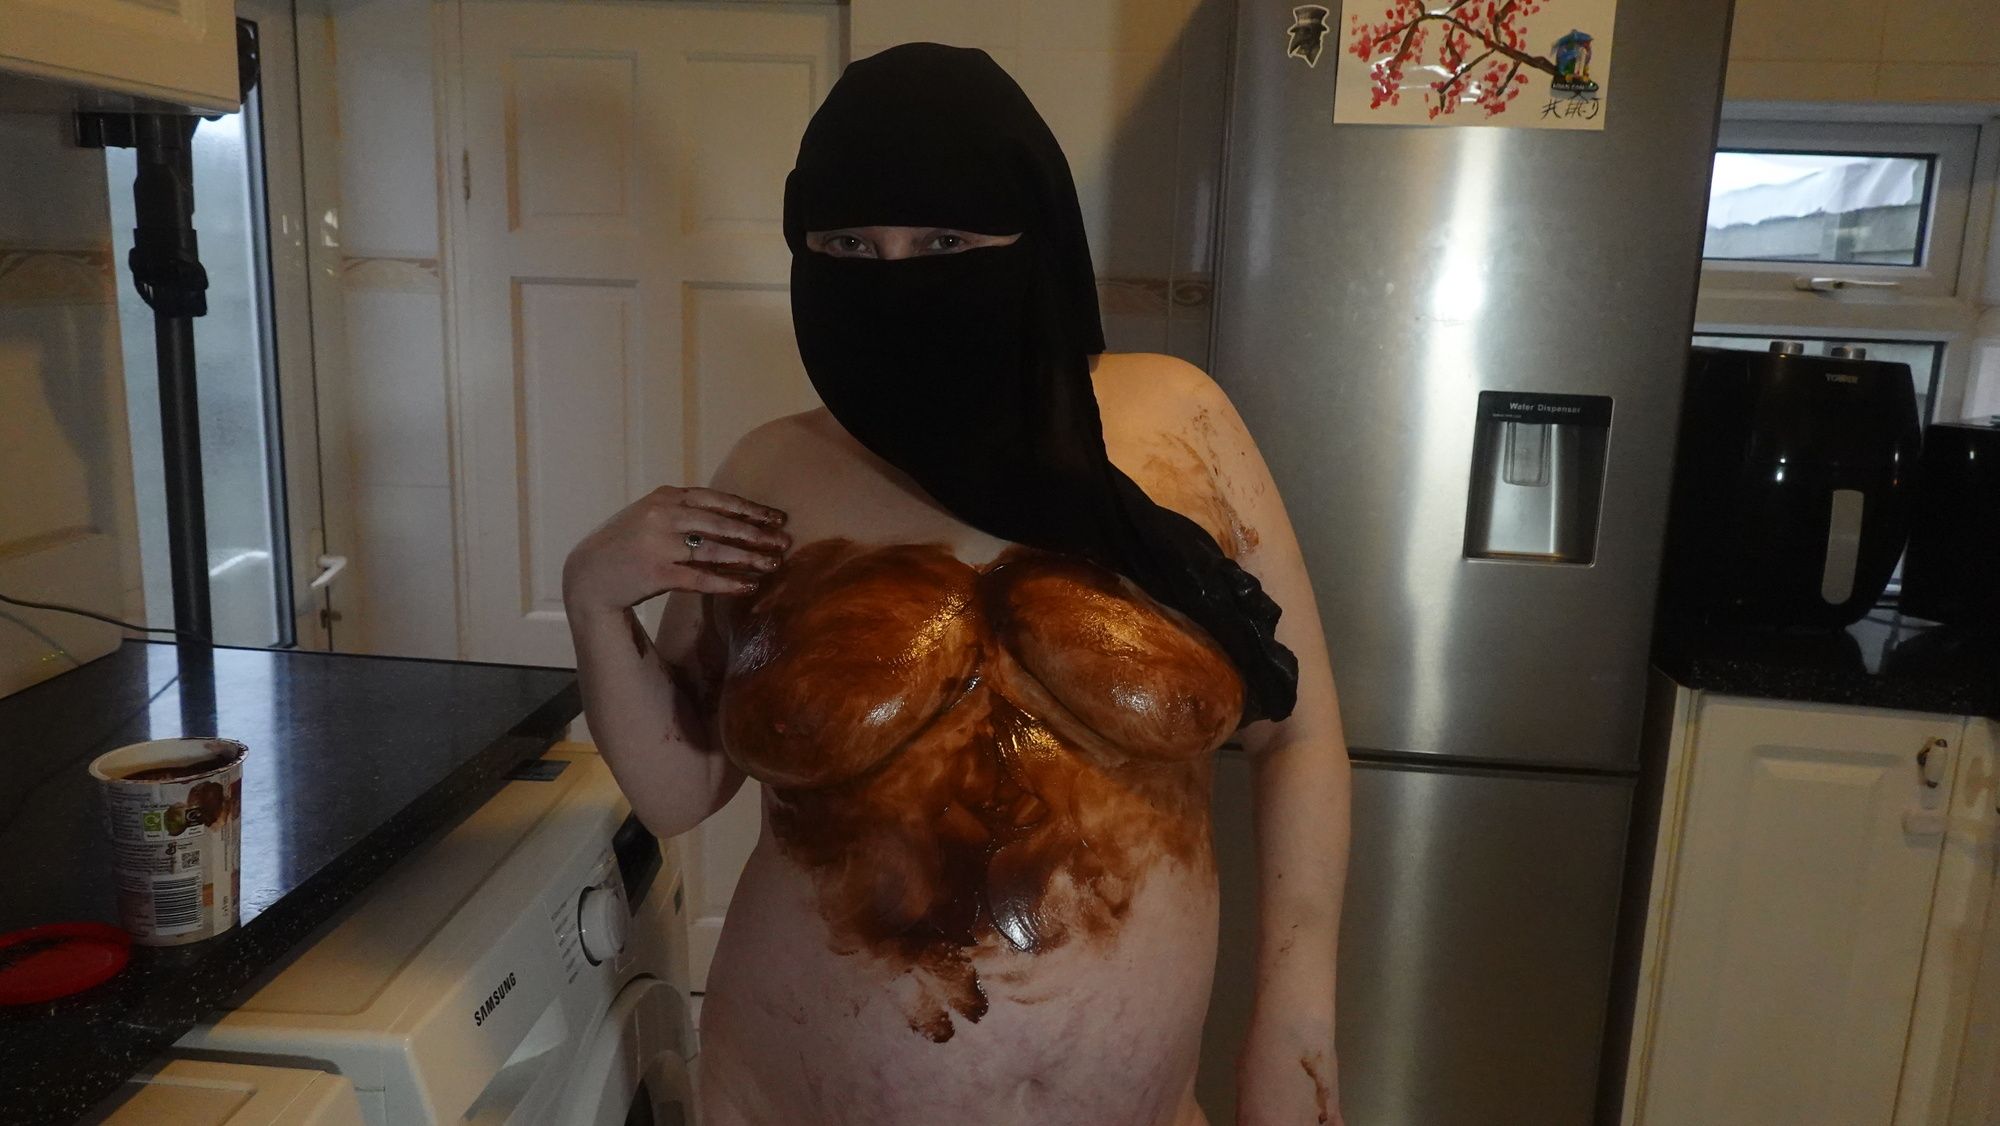 Niqab Naked chocolate sauce